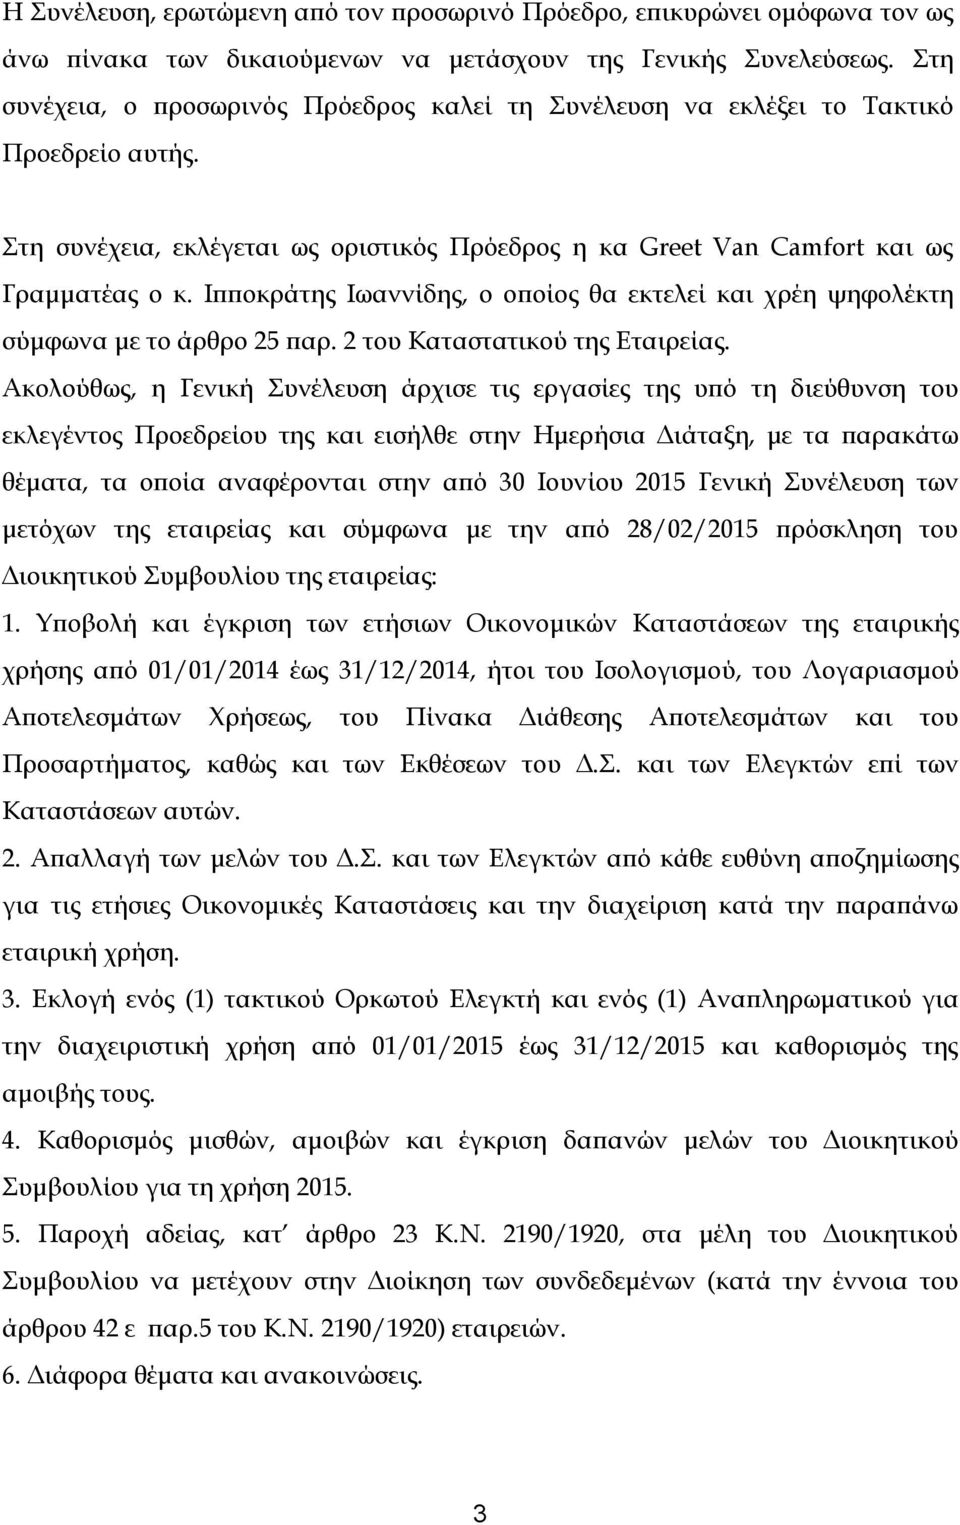 Ιπποκράτης Ιωαννίδης, ο οποίος θα εκτελεί και χρέη ψηφολέκτη σύμφωνα με το άρθρο 25 παρ. 2 του Καταστατικού της Εταιρείας.